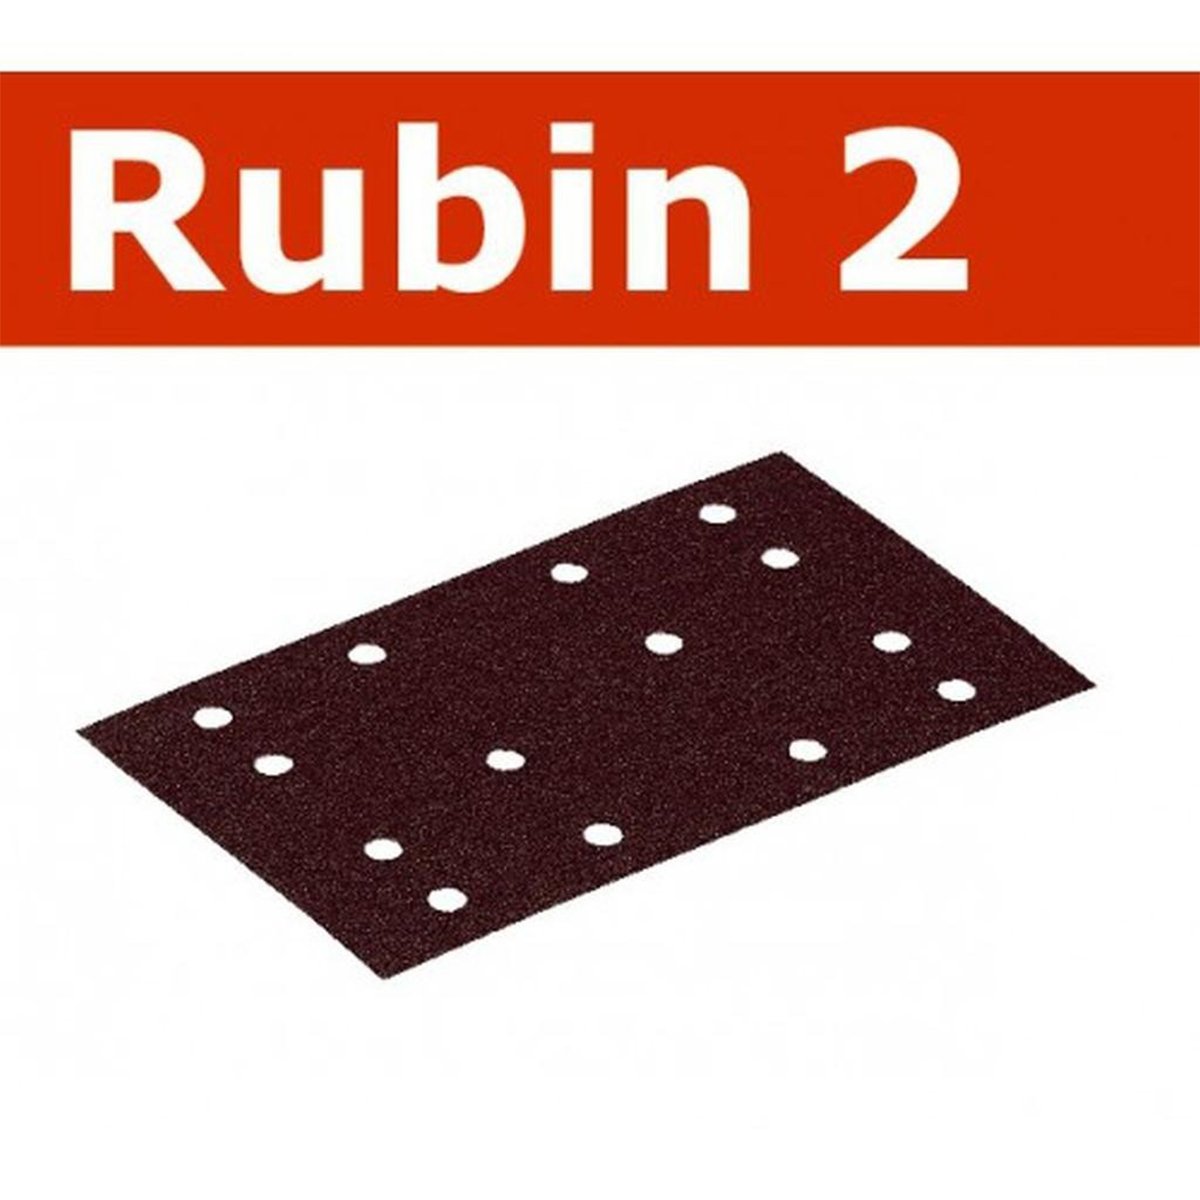 80x133mm aluminum oxide Rubin 2 abrasive sheet for use with Festool's RTS 400, RTSC 400, LS 130, rectangular sanding blocks.